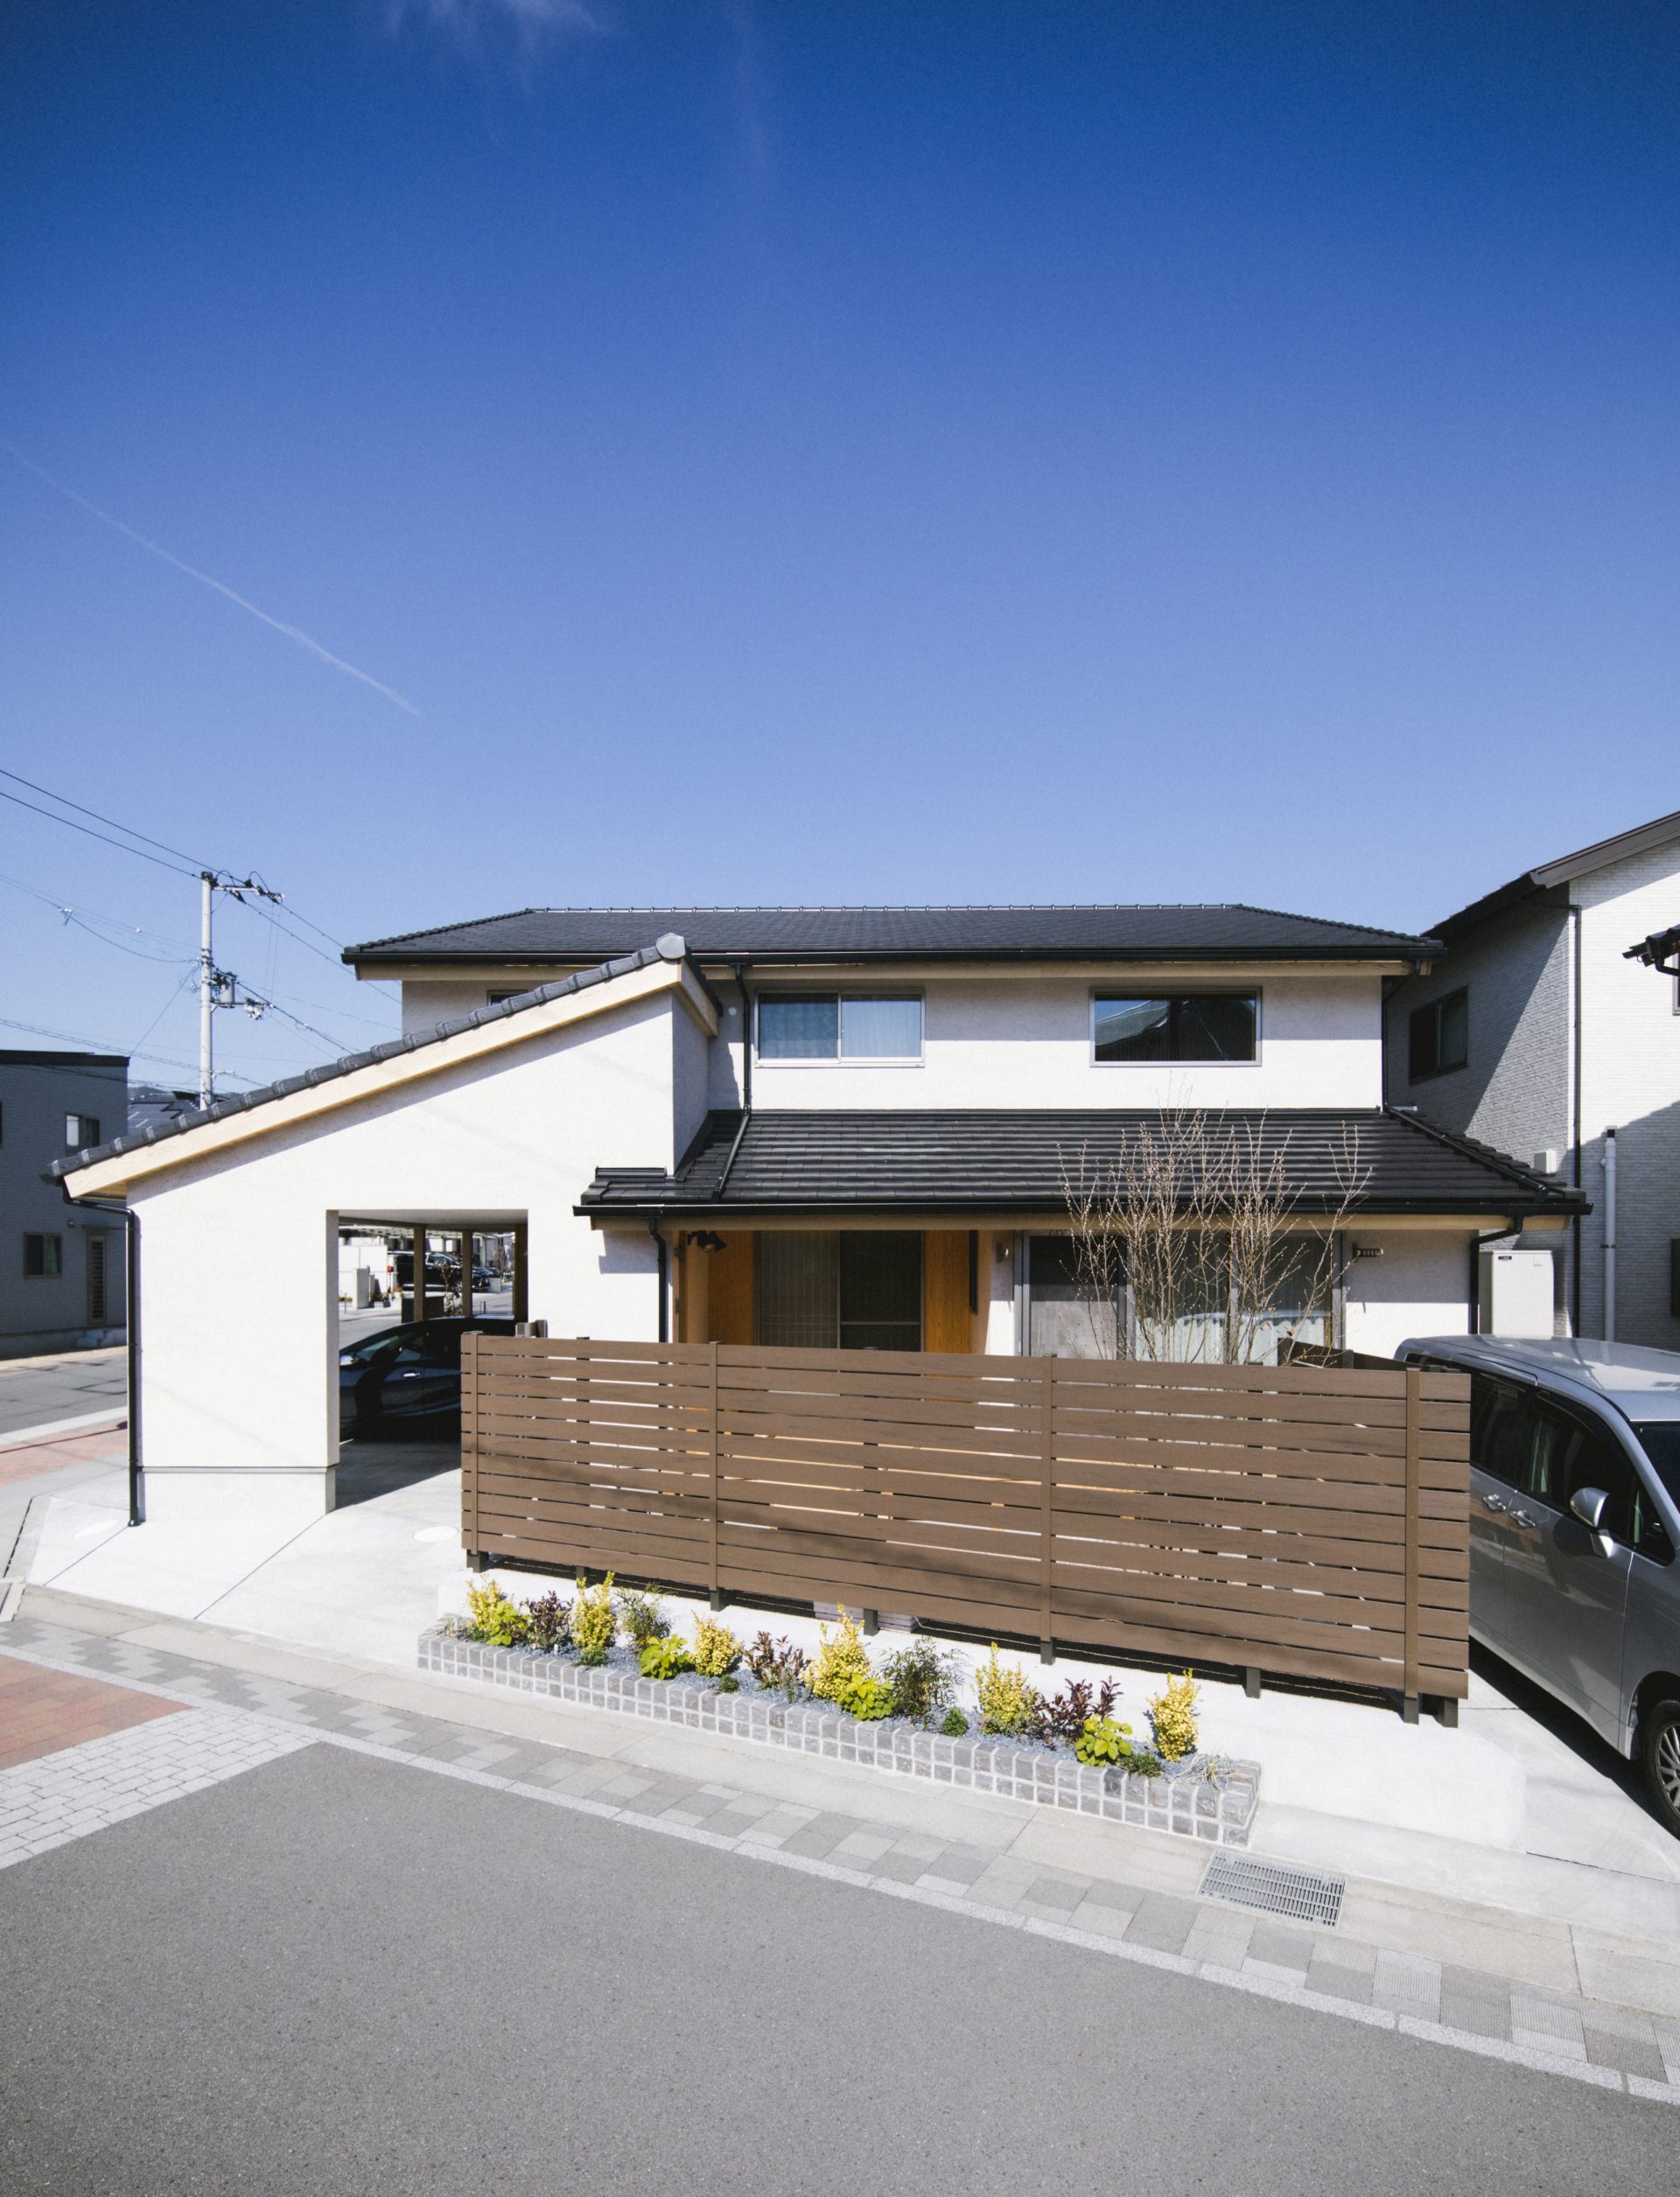 Căn nhà gỗ xây dựng theo lối kiến trúc Nhật Bản với 1 trệt 1 lửng đủ bình yên cho gia đình trẻ - Ảnh 3.